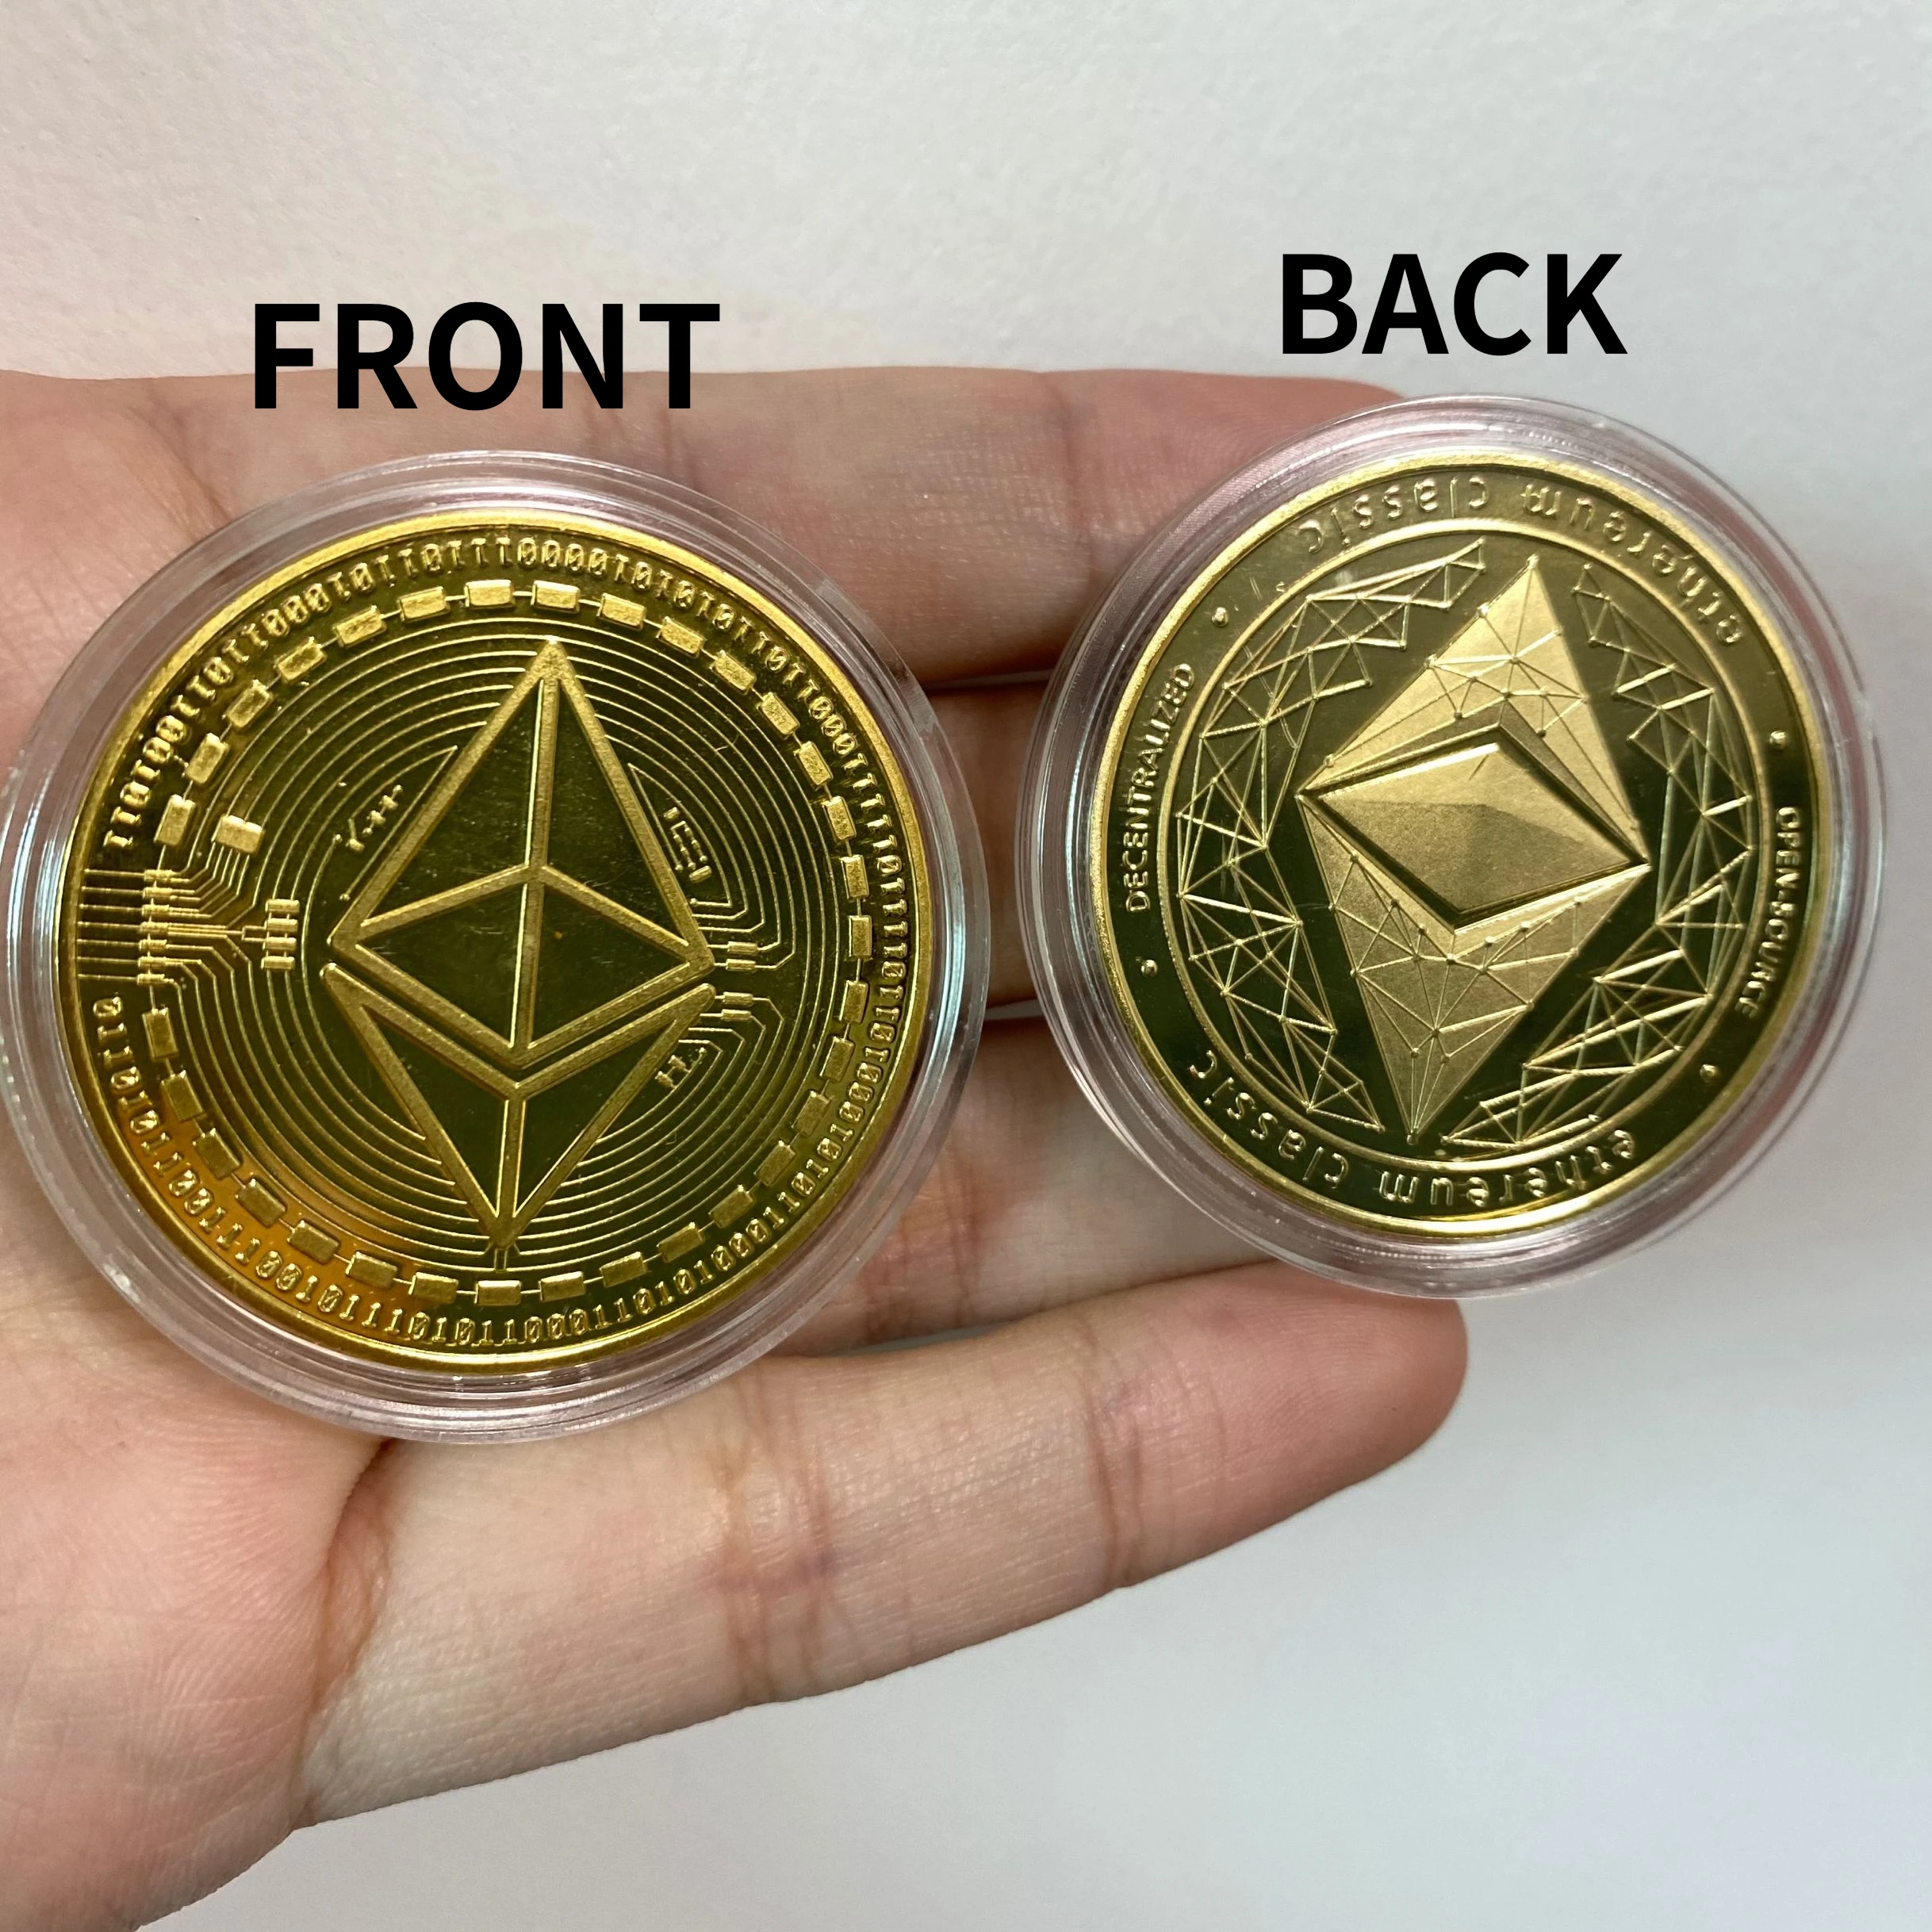 siųsti ethereum iš monetų bazės